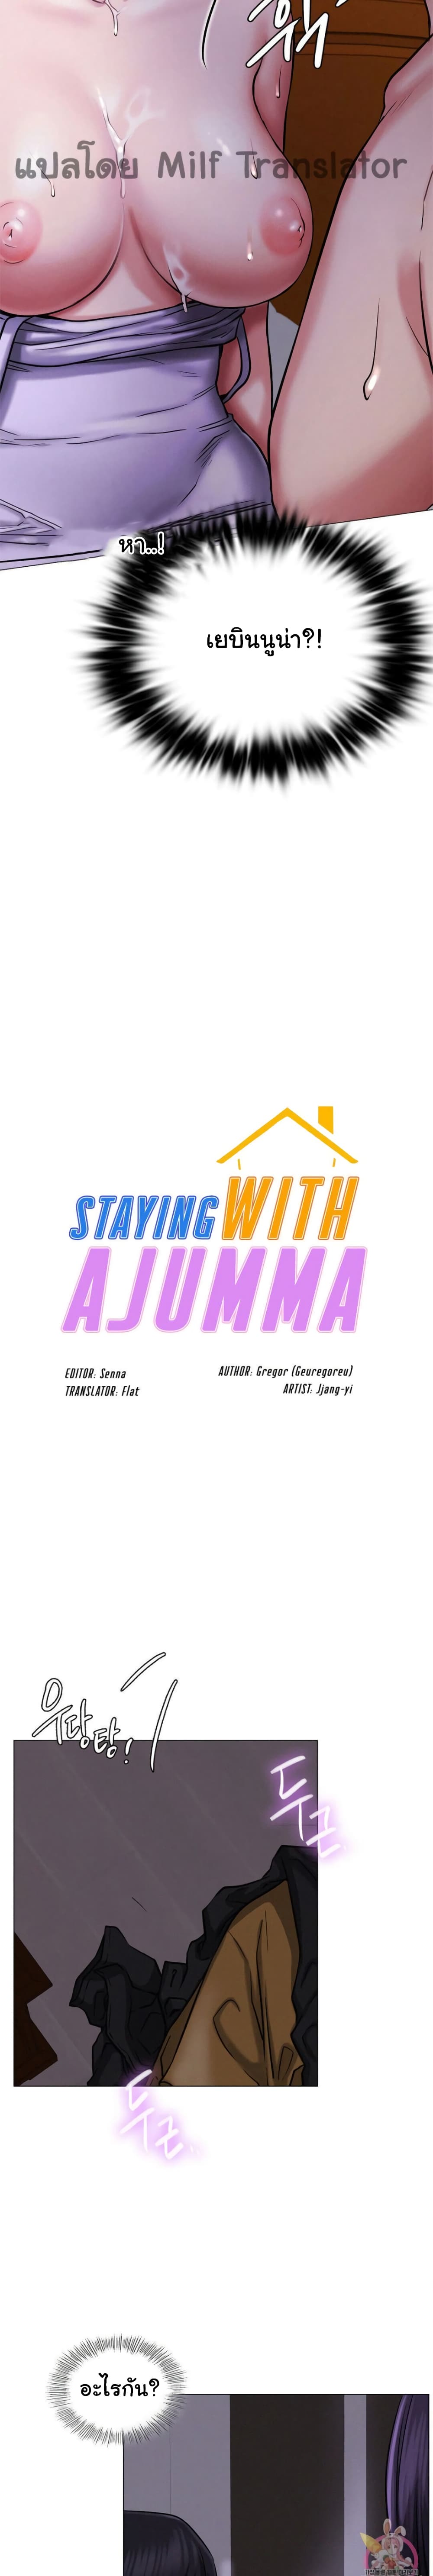 Staying with Ajumma 8-8